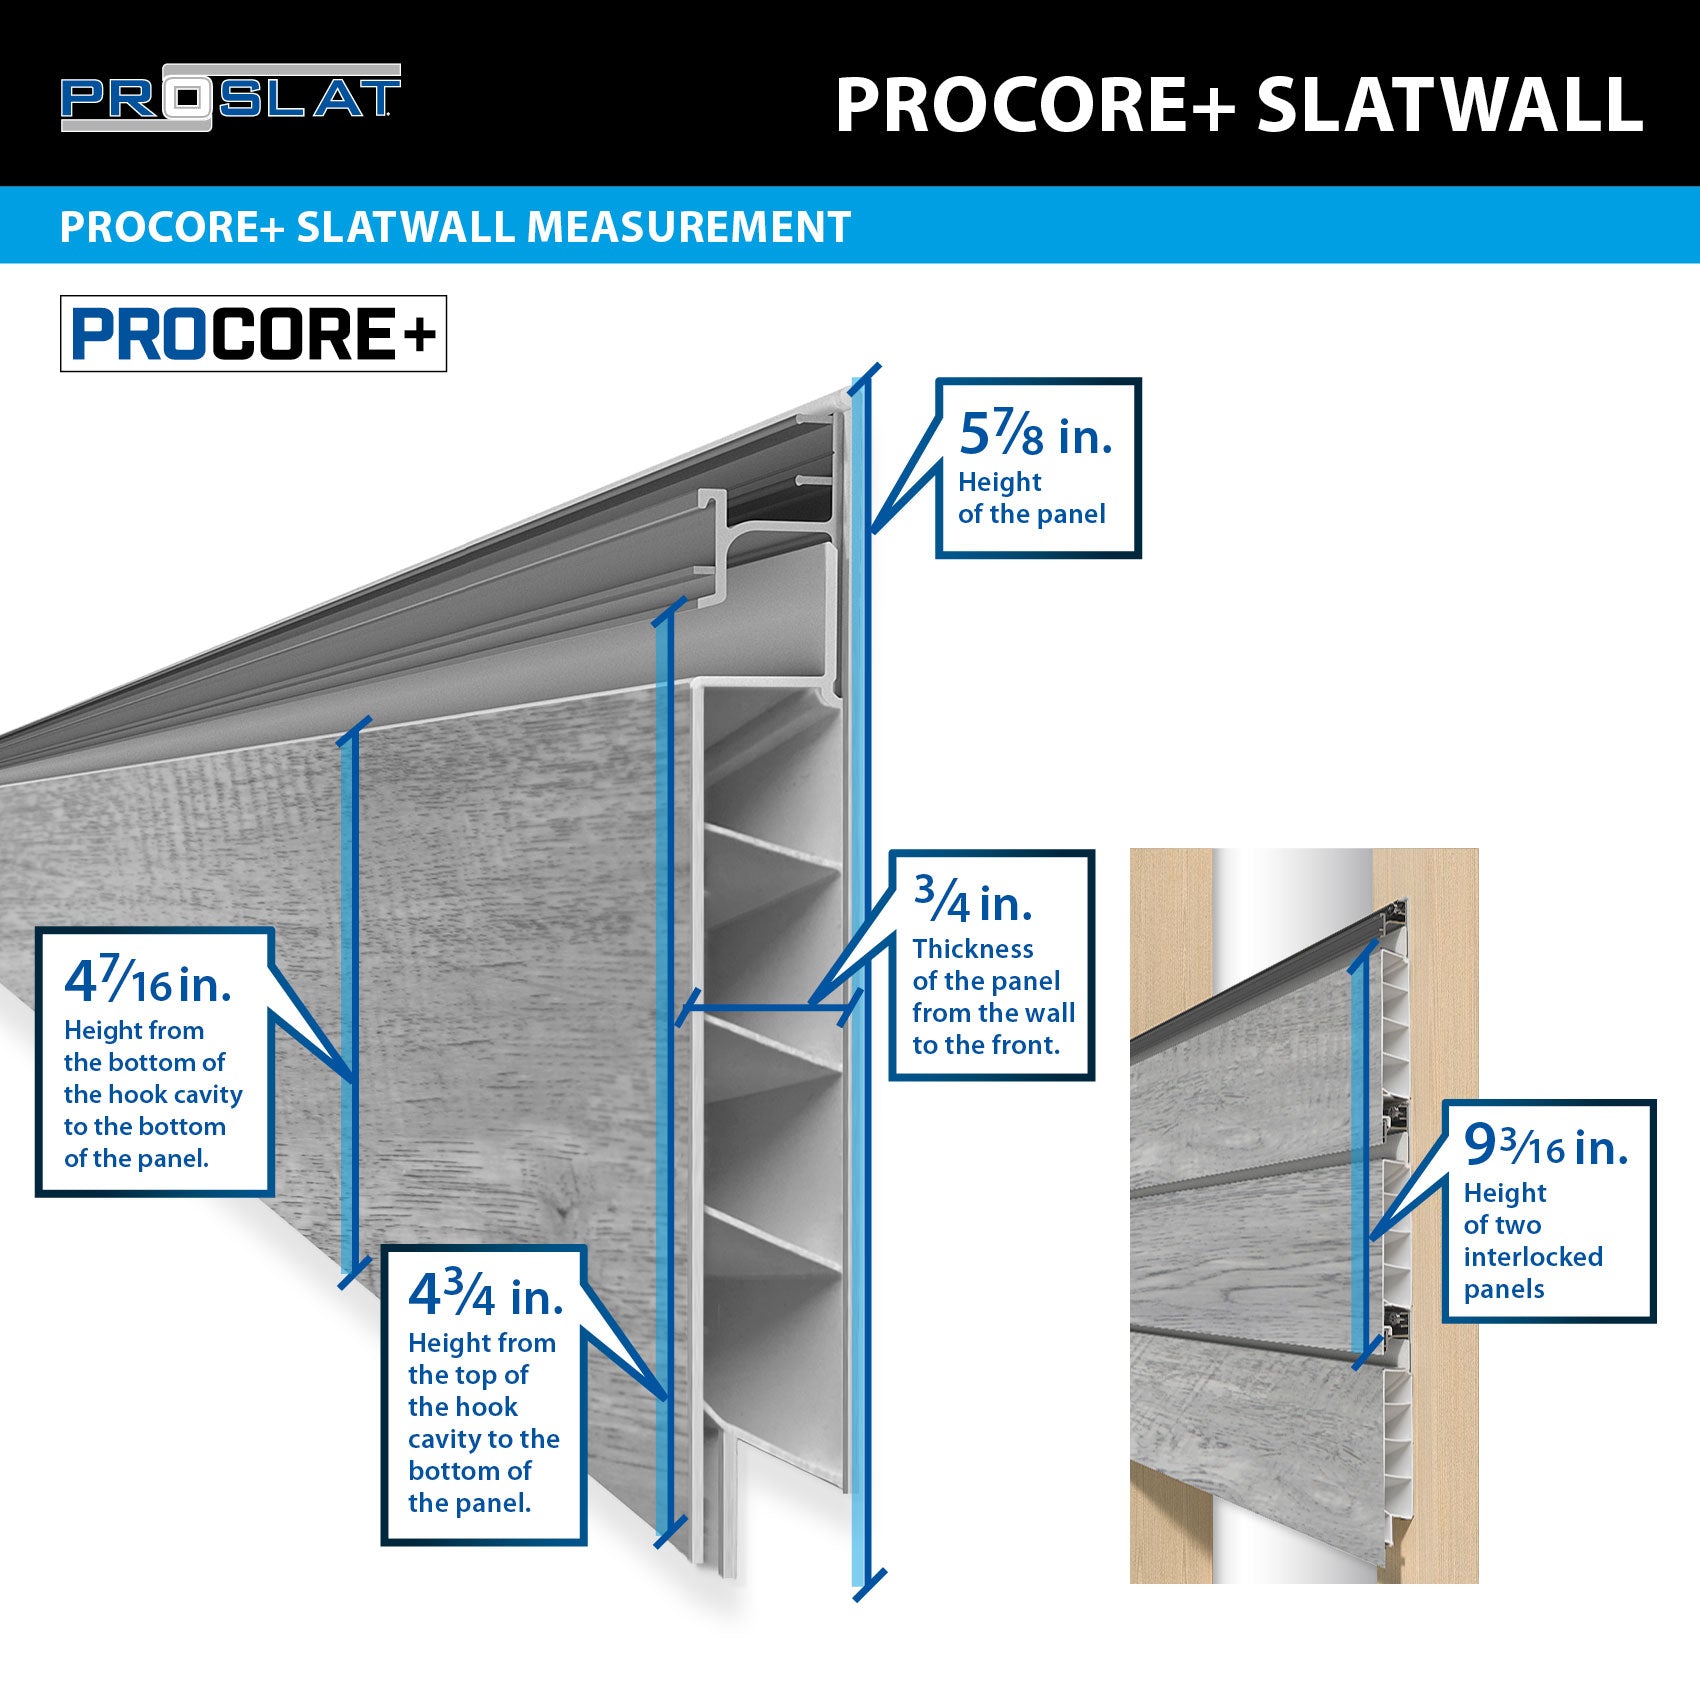 PROCORE+ Grey Wood Slatwall Ultimate Bundle